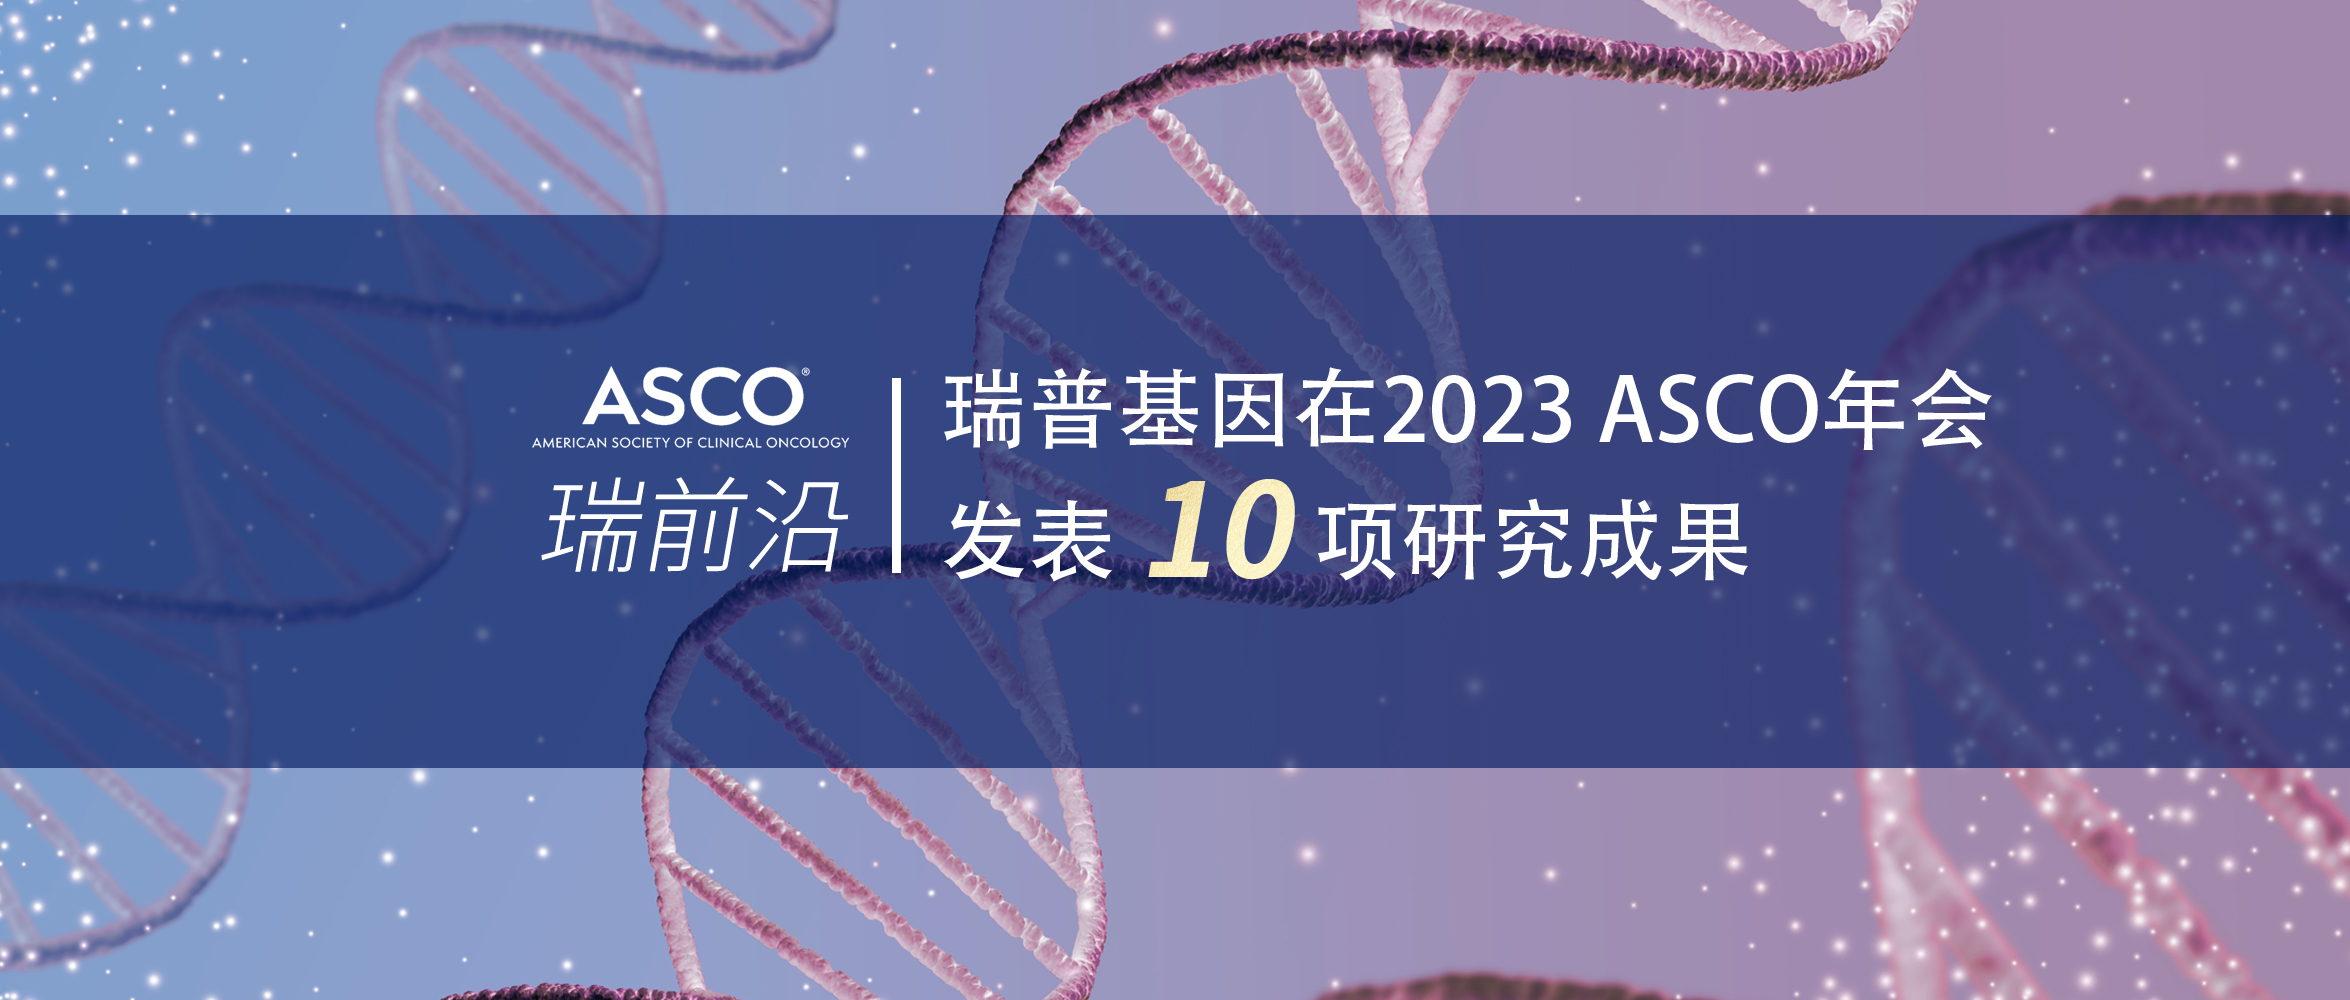 新葡的京集团350vip8888在2023 ASCO年会发表10项研究